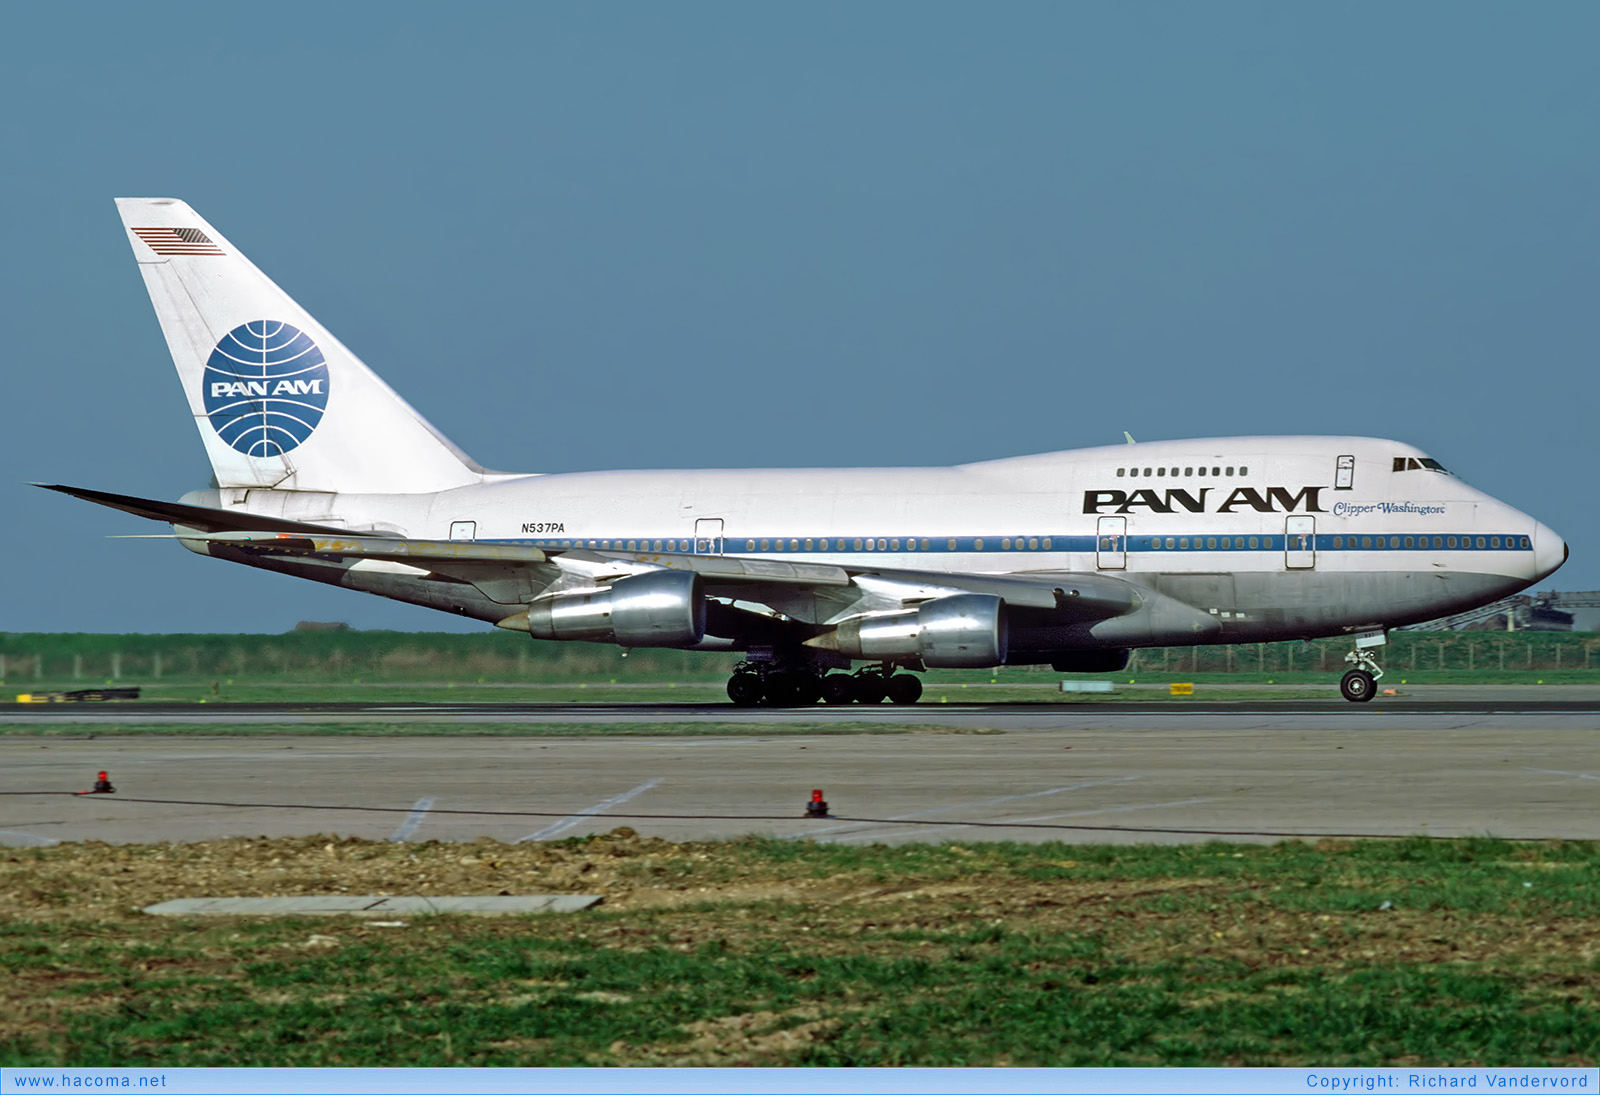 Photo of N537PA - Pan Am Clipper High Flyer / Washington - London Heathrow Airport - Apr 1984